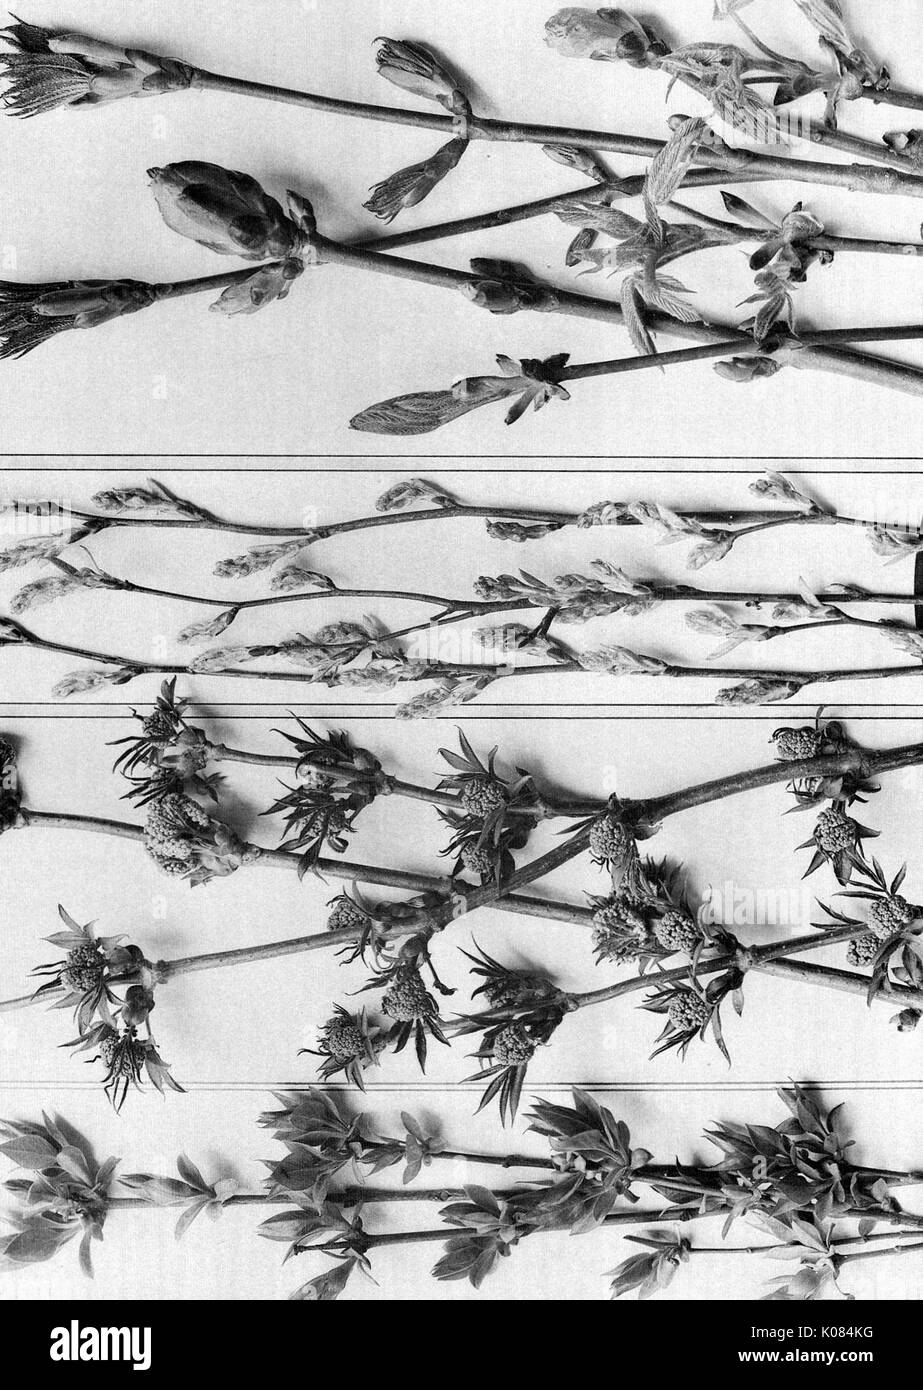 Plant Dessins avec quatre différents types de plantes dans des lignes différentes, toutes les plantes semblent avoir un autre type de fleur, 1900. Banque D'Images